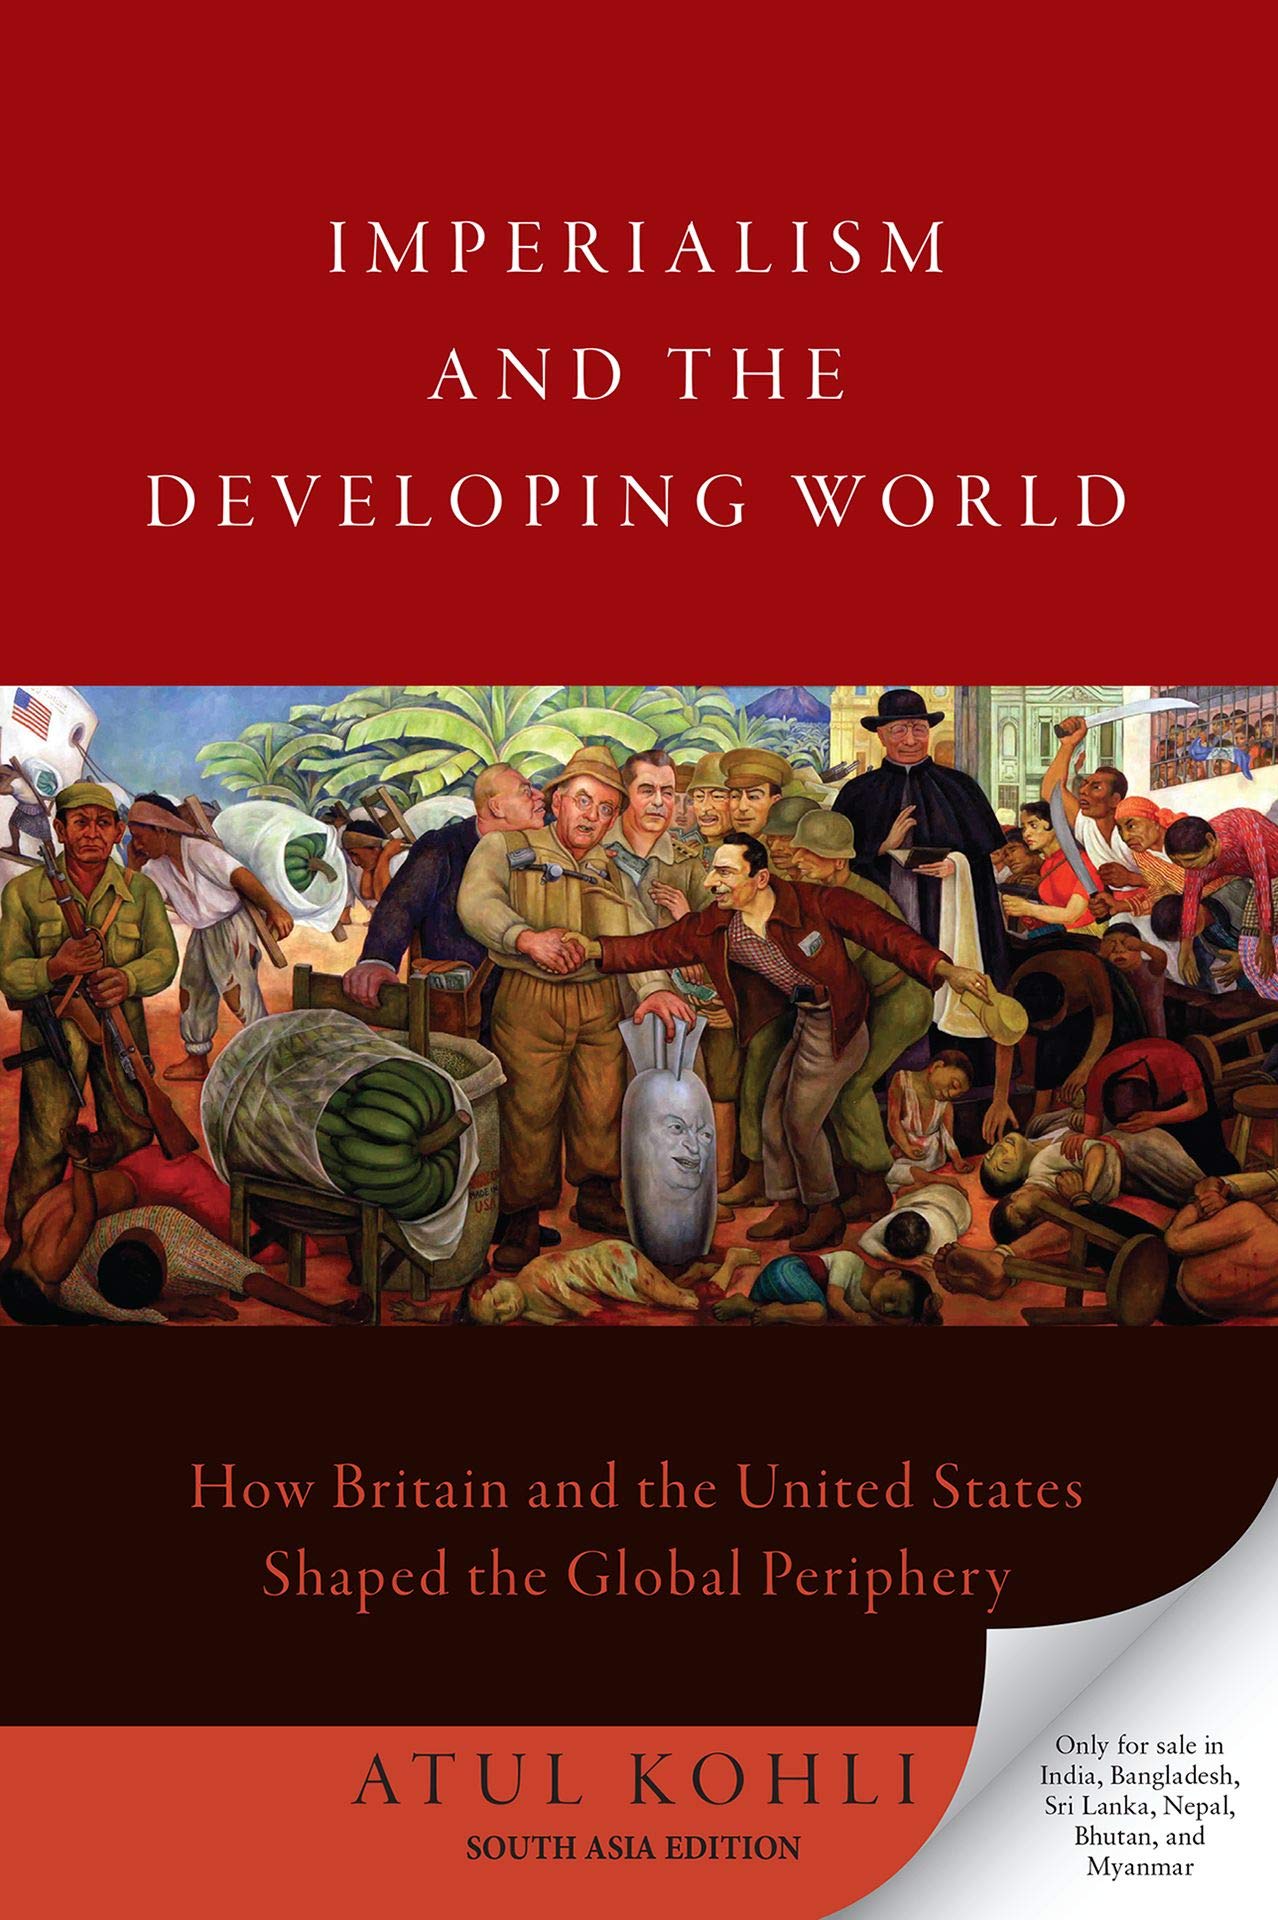 كتاب الإمبريالية والعالم النامي ..كيف شكلت بريطانيا وأمريكا المحيط العالمي؟